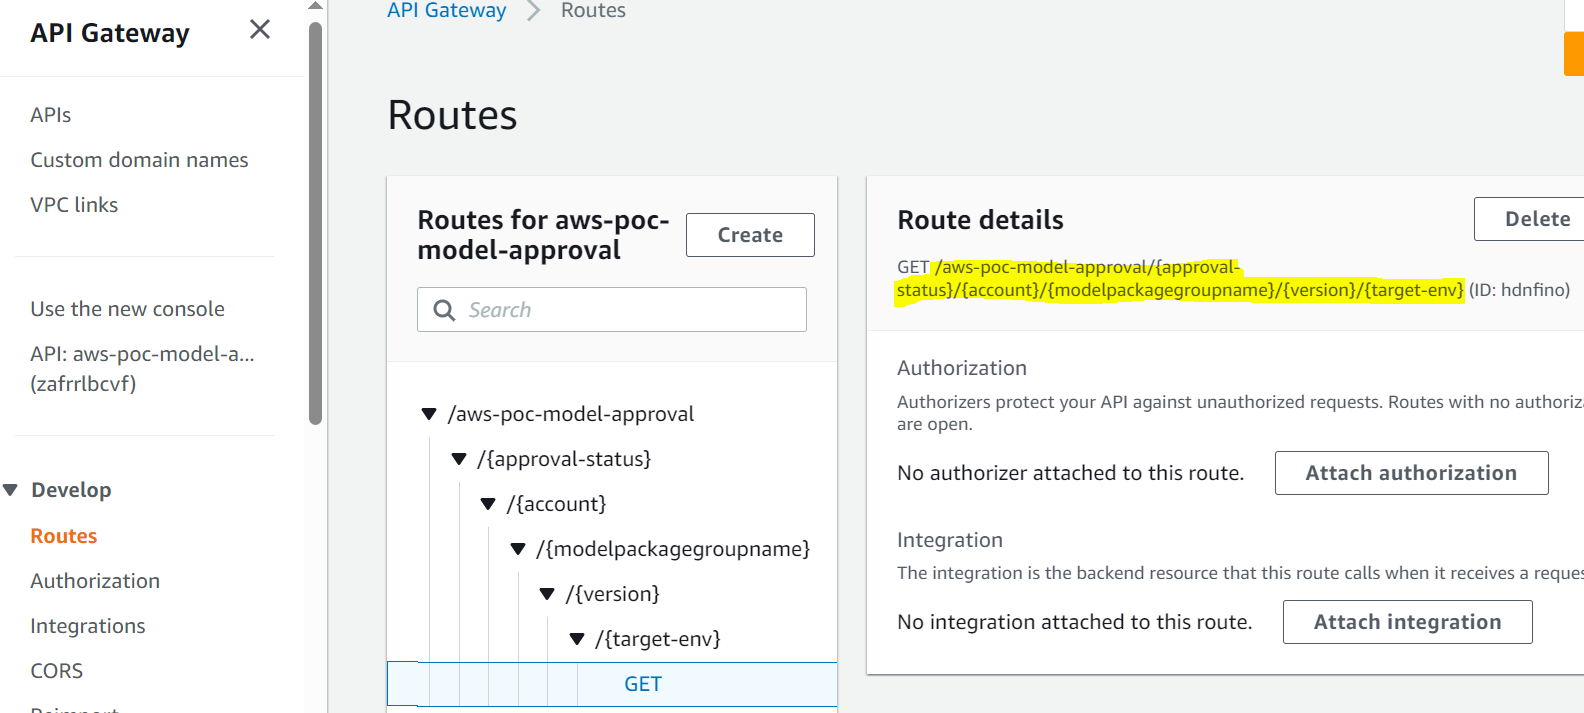 API Gateway route details